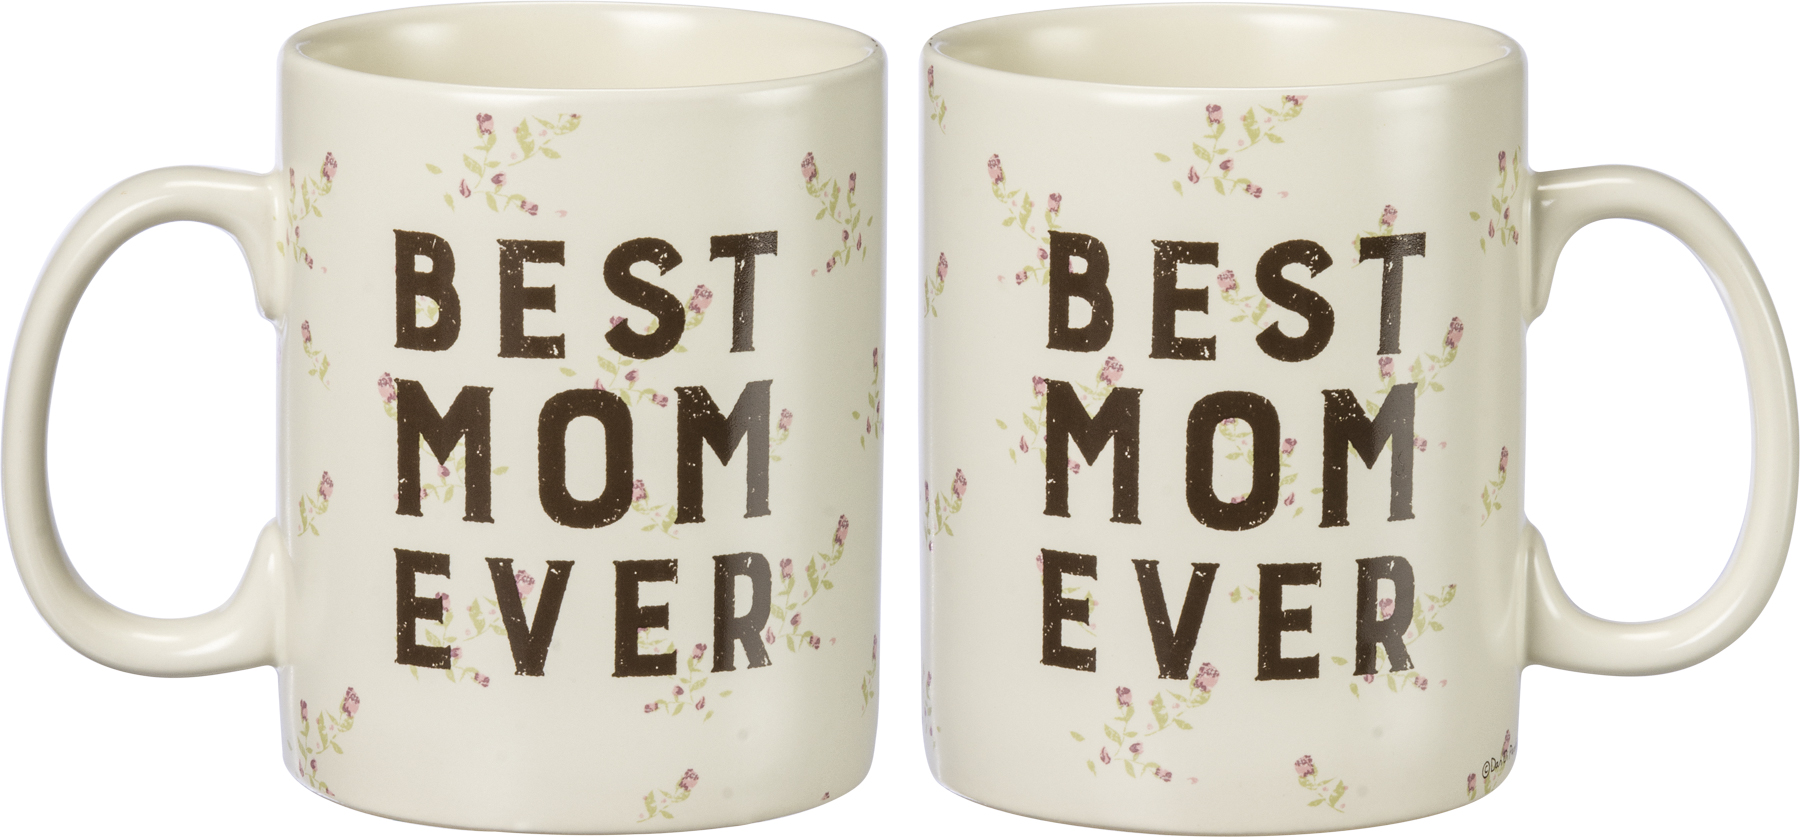 16oz Stoneware Best Mom Ever Mug Light Pink - Parker Lane